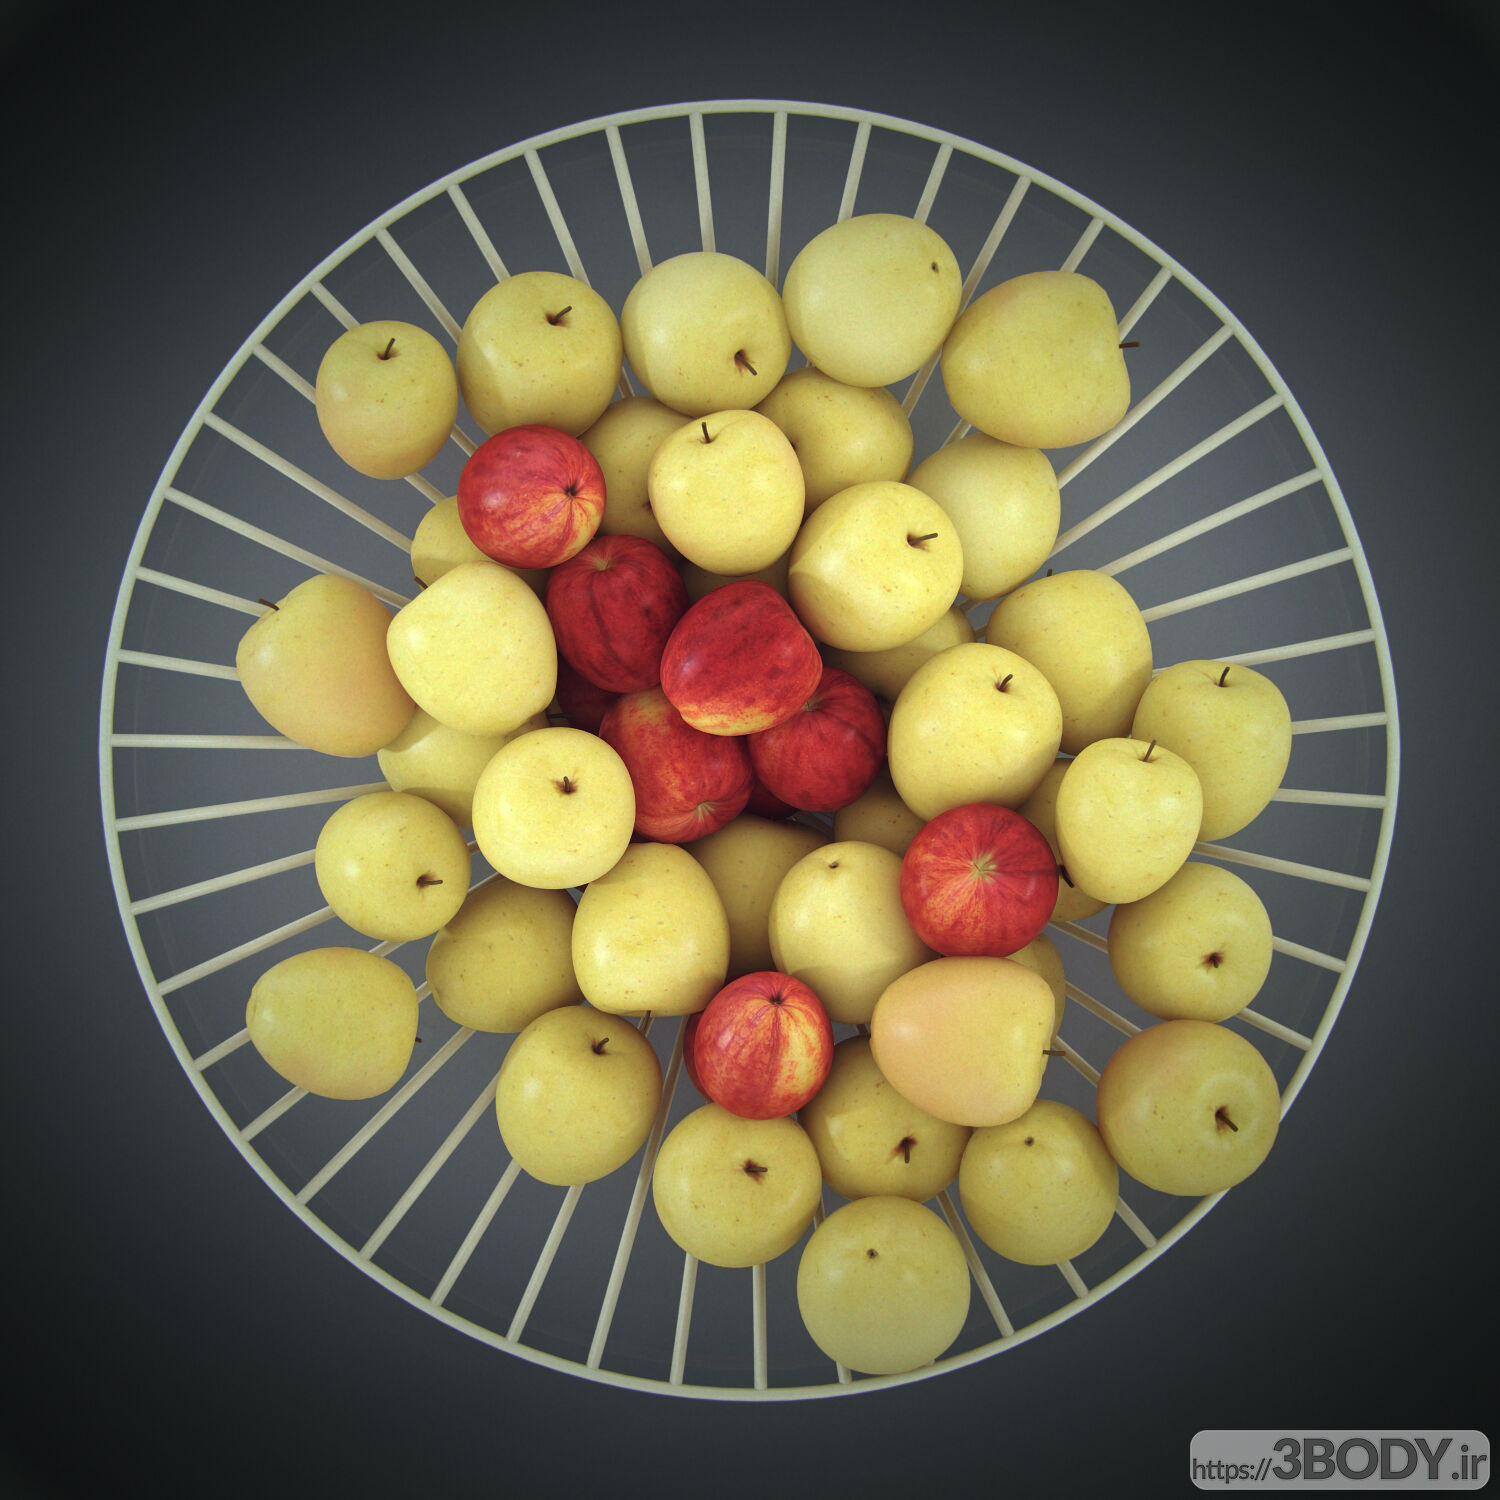 مدل سه بعدی جامیوه ای با سیب عکس 3